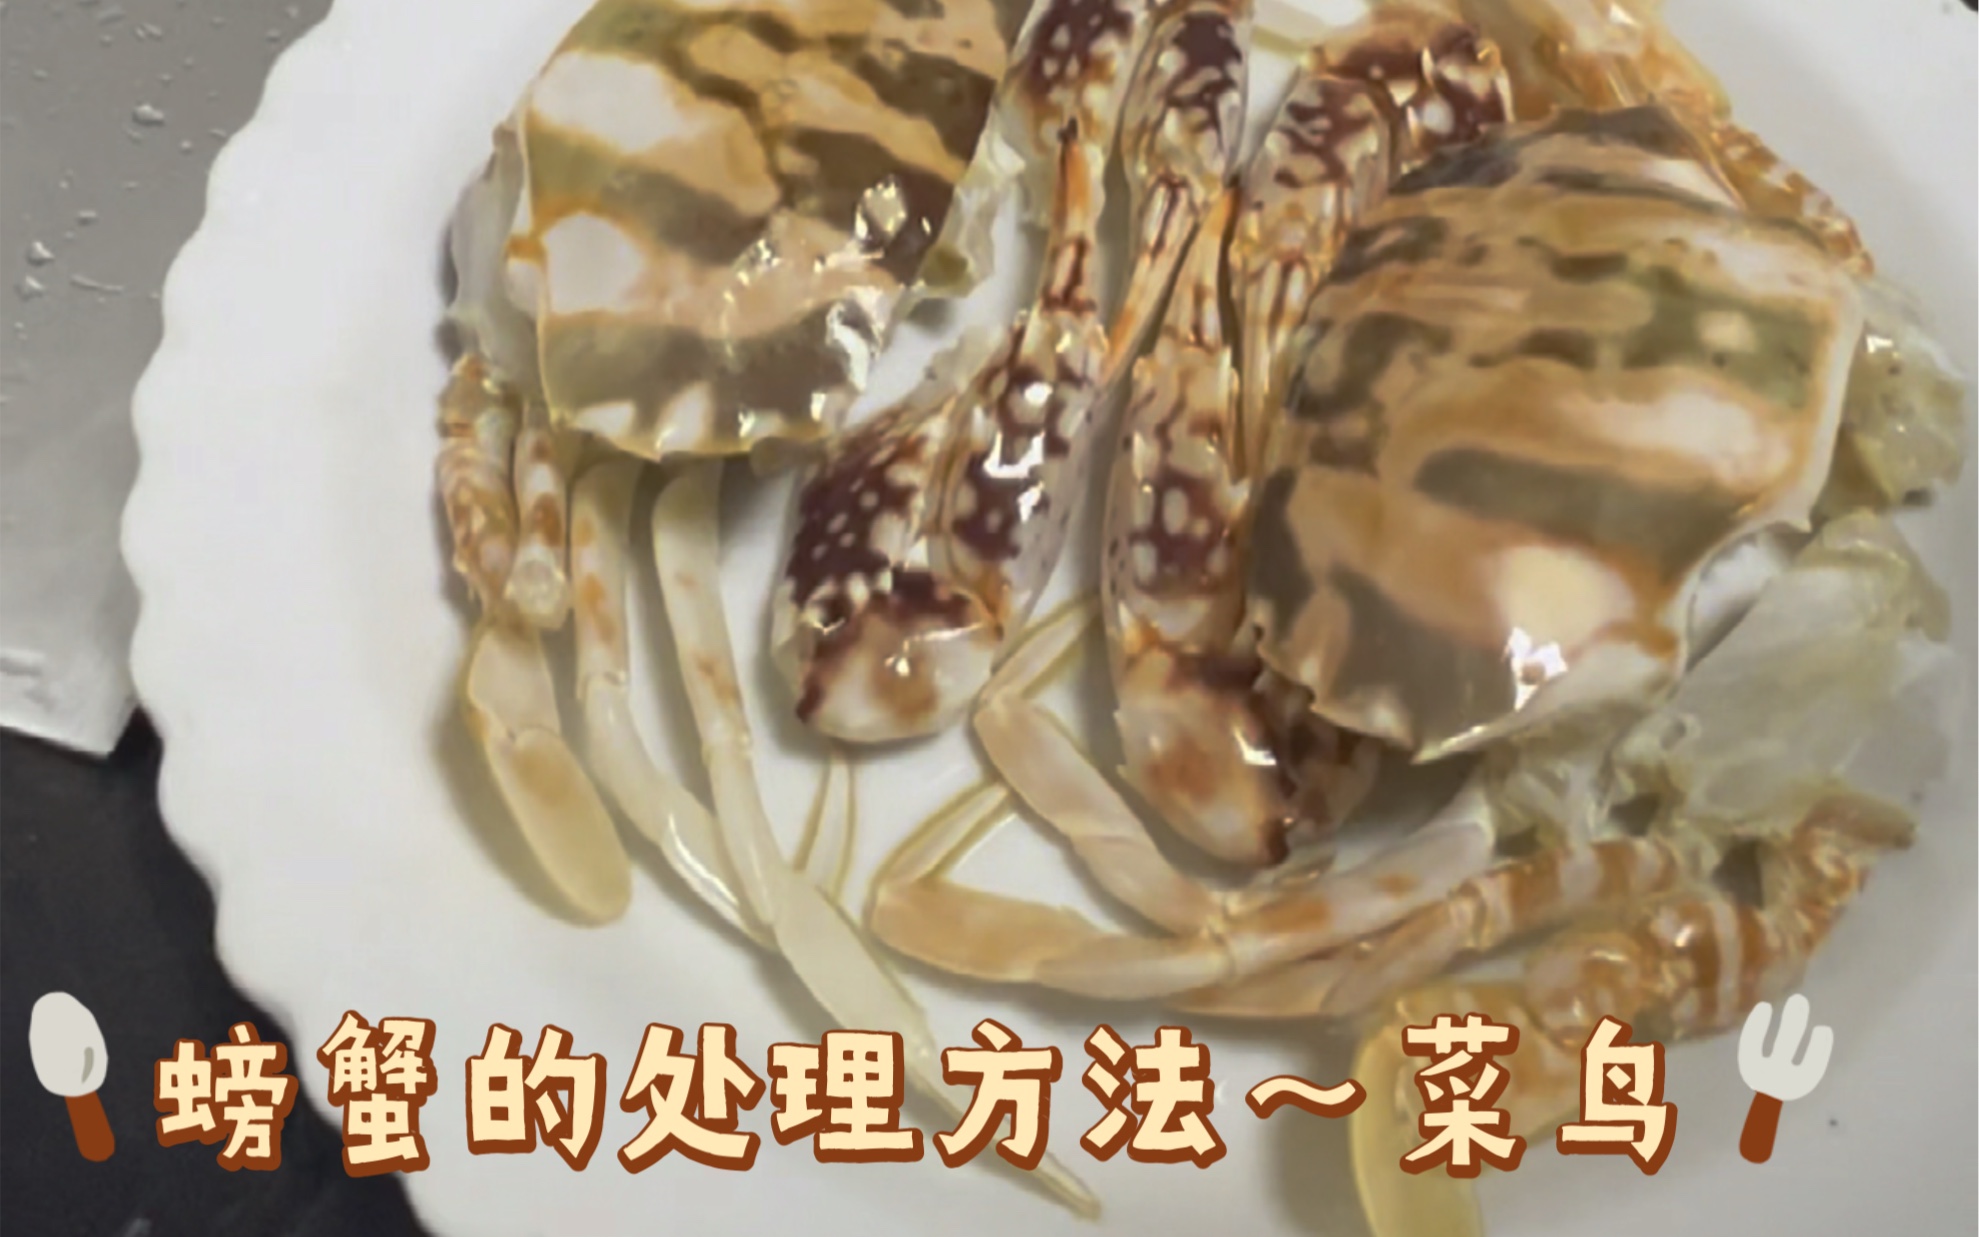 螃蟹会吃，但你会处理吗？菜鸟教学之螃蟹的处理方法